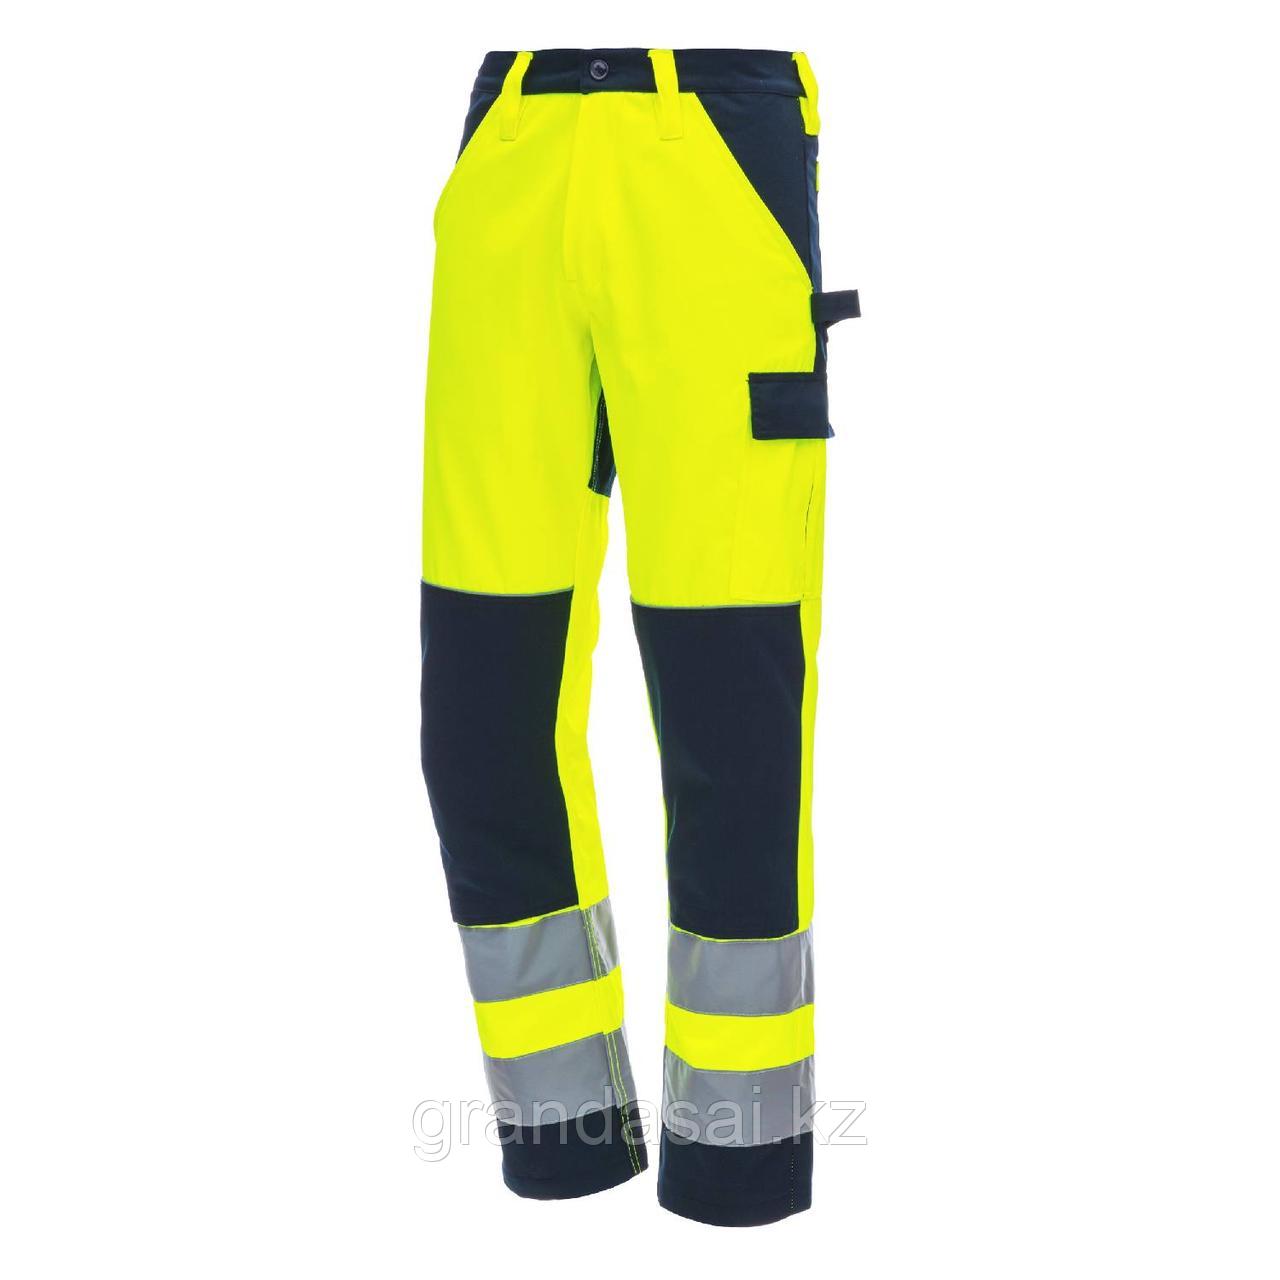 NITRAS 7571 рабочие брюки повышенной видимости, желтый / темно-синий